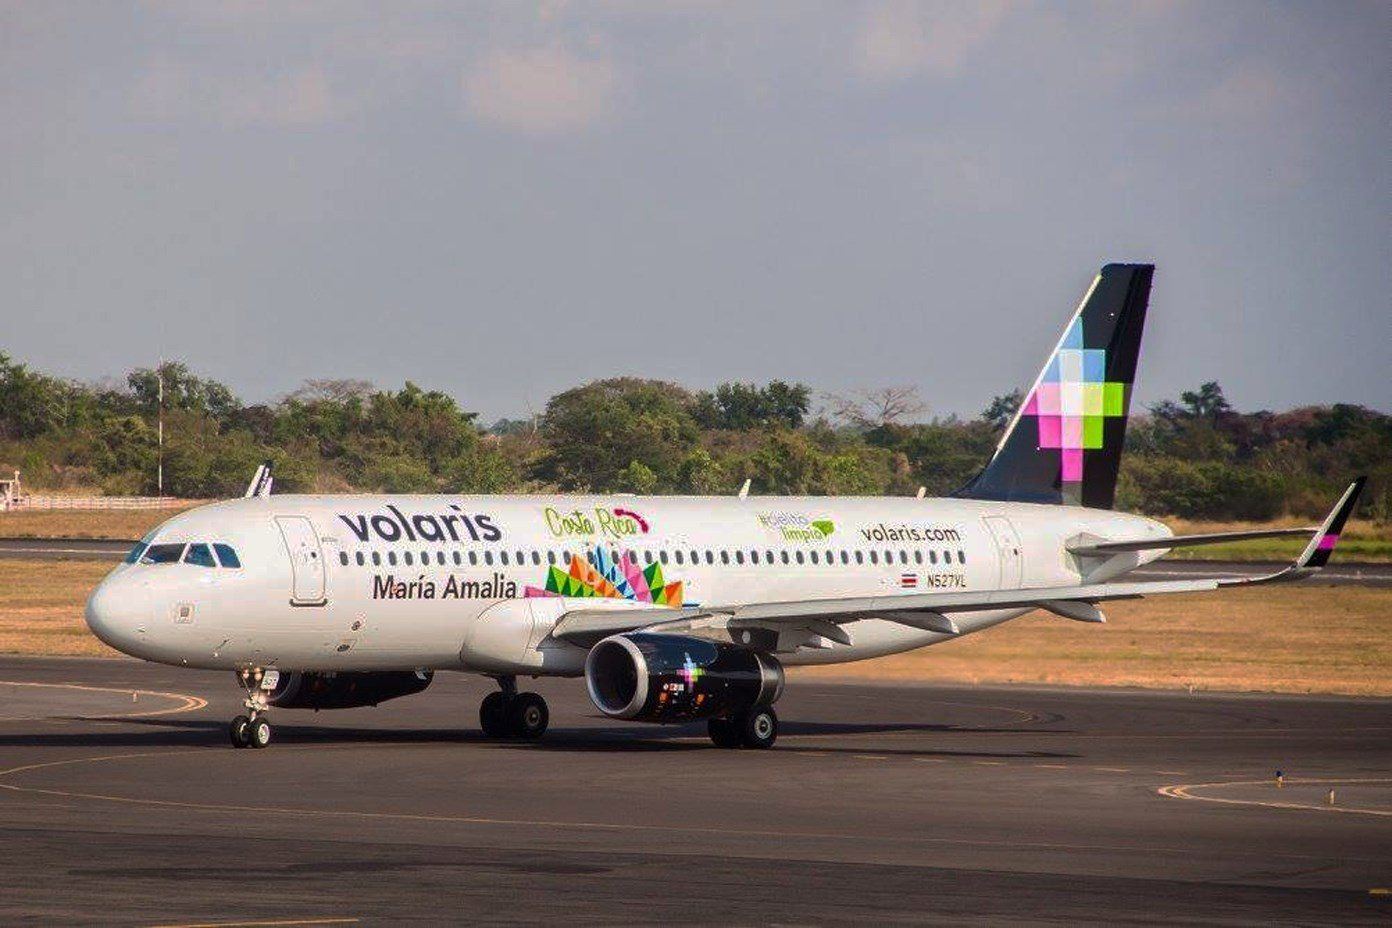 aerolinea-mexicana-ofrece-vuelos-a-1-dolar-para-la-repatriacion-de-migrantes